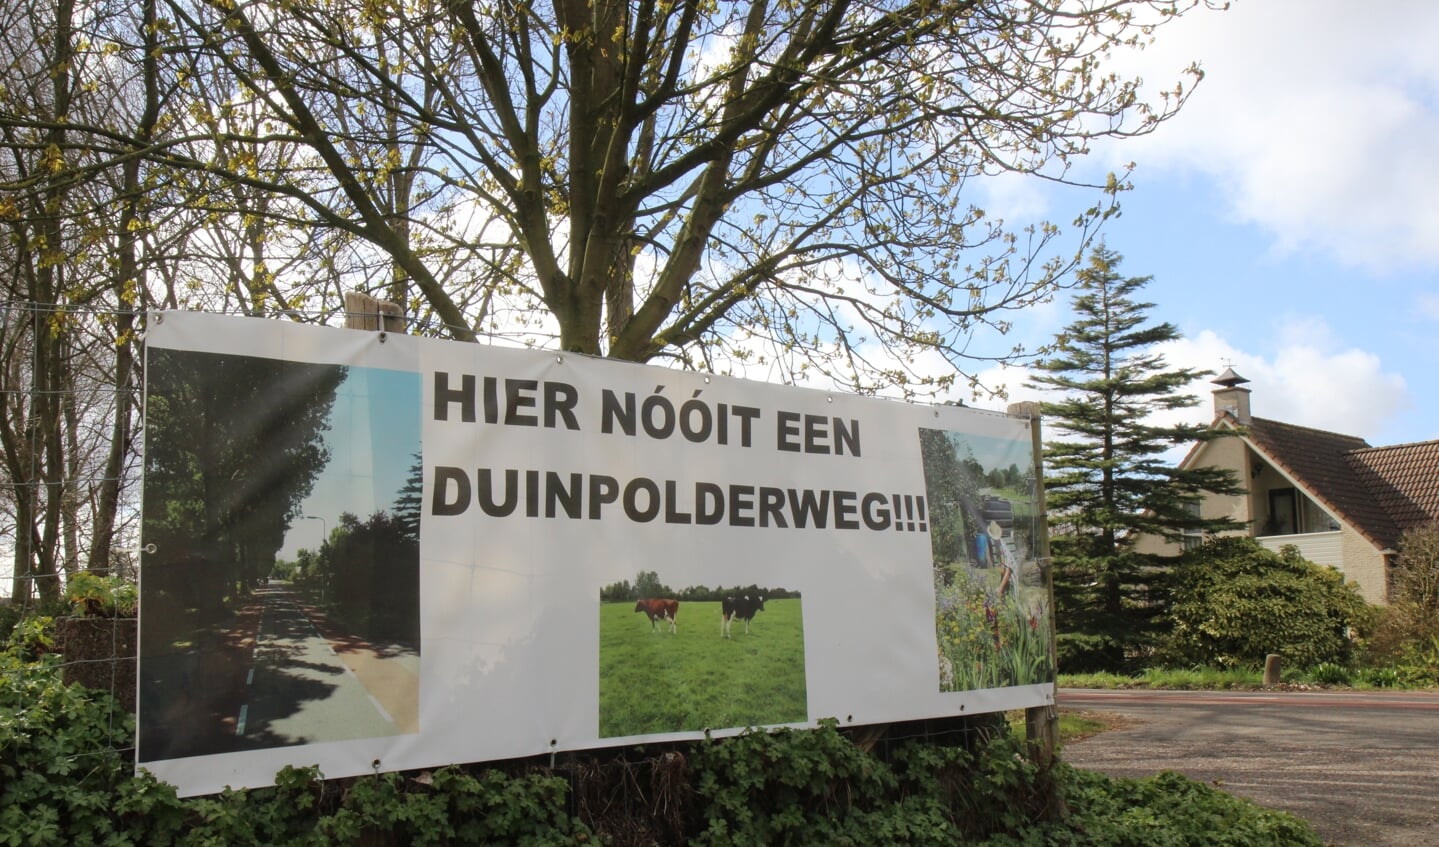 Nu er geen Duinpolderweg komt moet er ets anders gebeuren op het fileprobleem in het westen van Haarlemmermeer te verhelpen. .